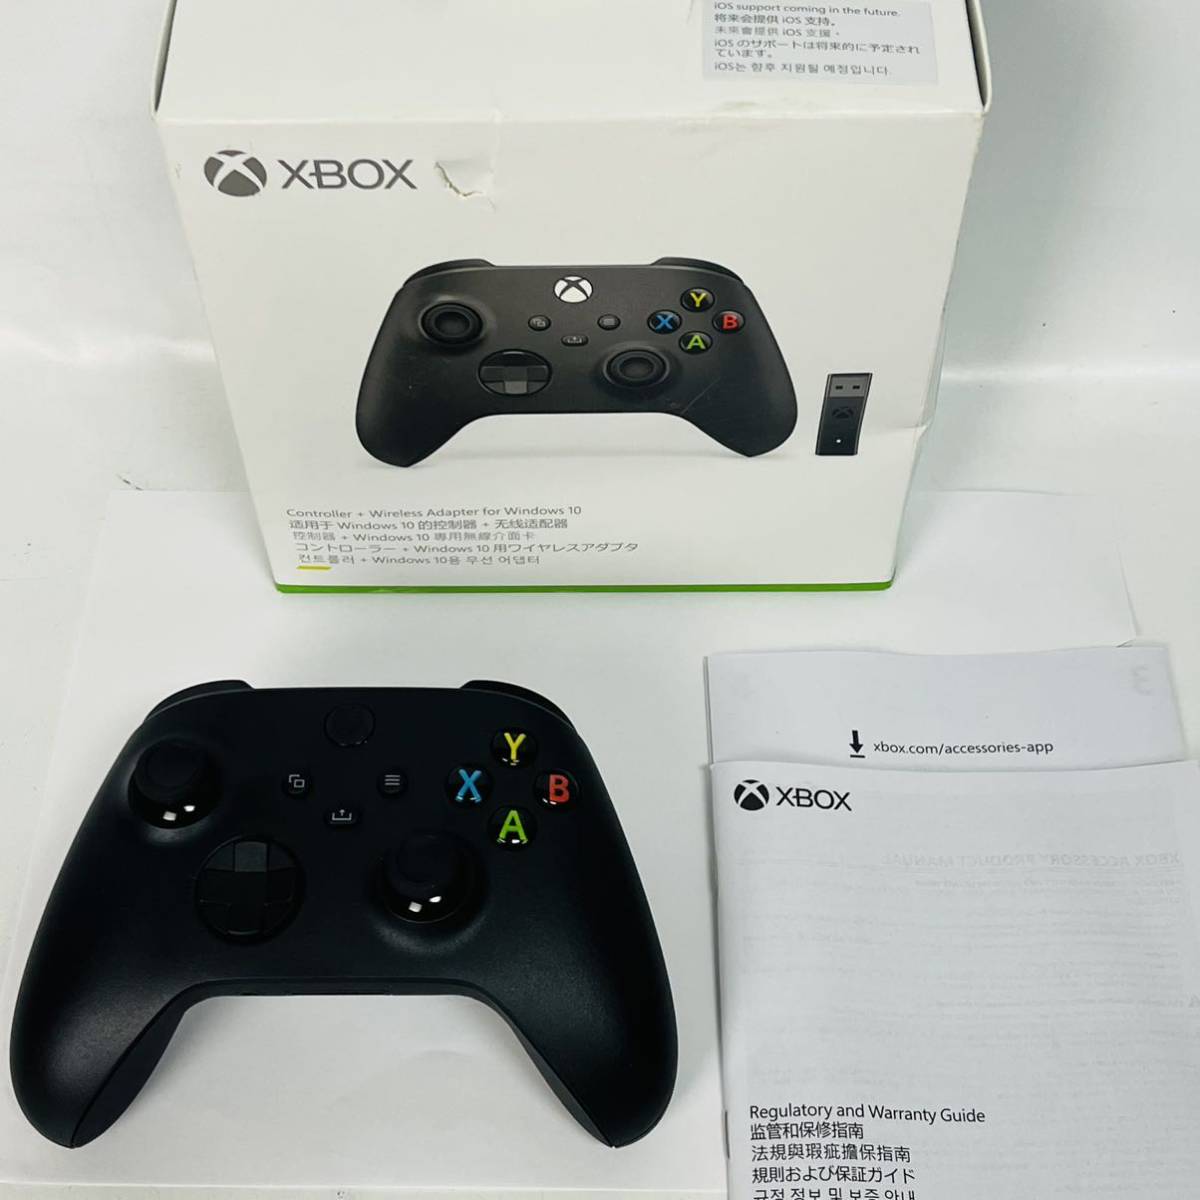 Xbox One ワイヤレス コントローラー (ブラック)の値段と価格推移は？｜19件の売買情報を集計したXbox One ワイヤレス コントローラー  (ブラック)の価格や価値の推移データを公開